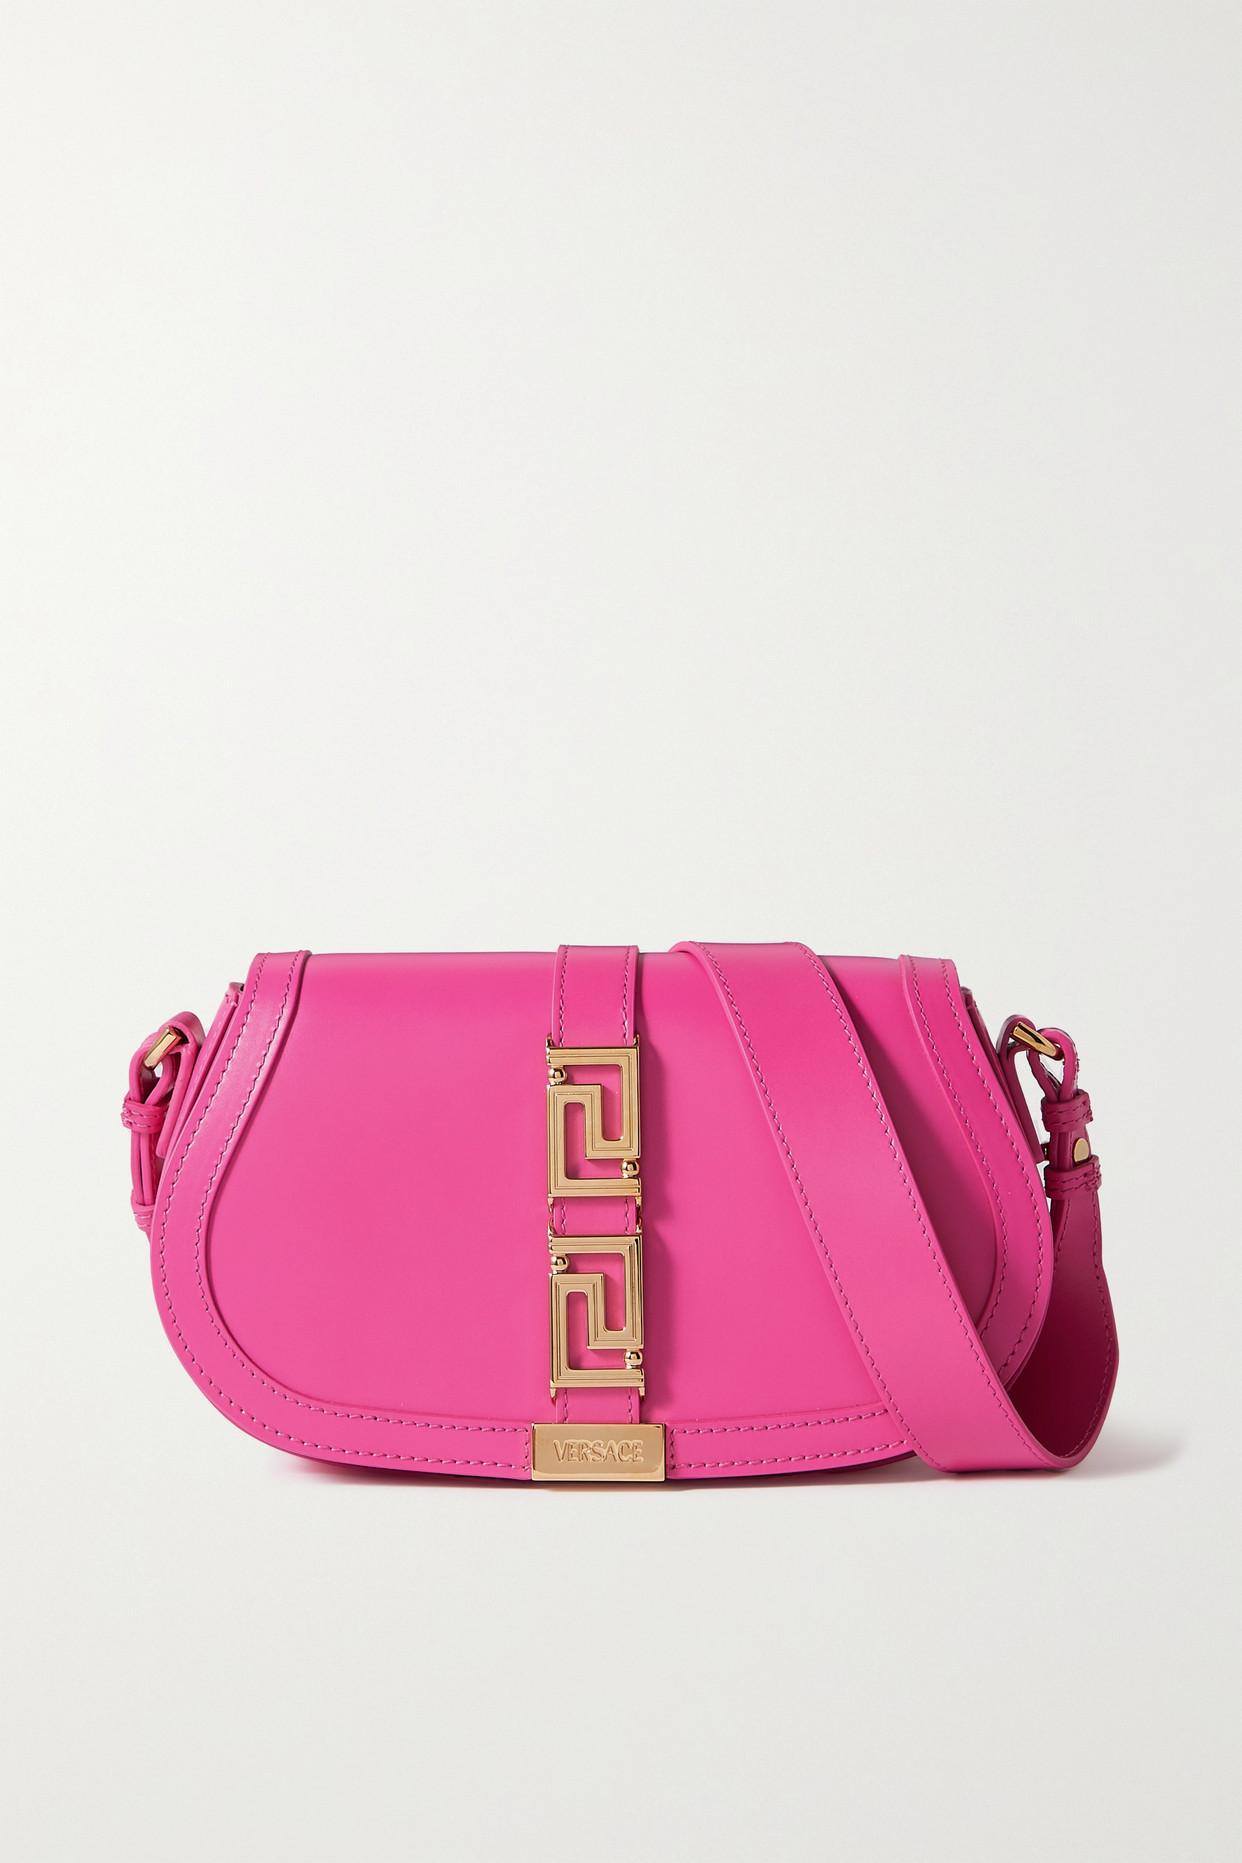 Versace Greca Goddess Embellished Leather Shoulder Bag in Pink | Lyst